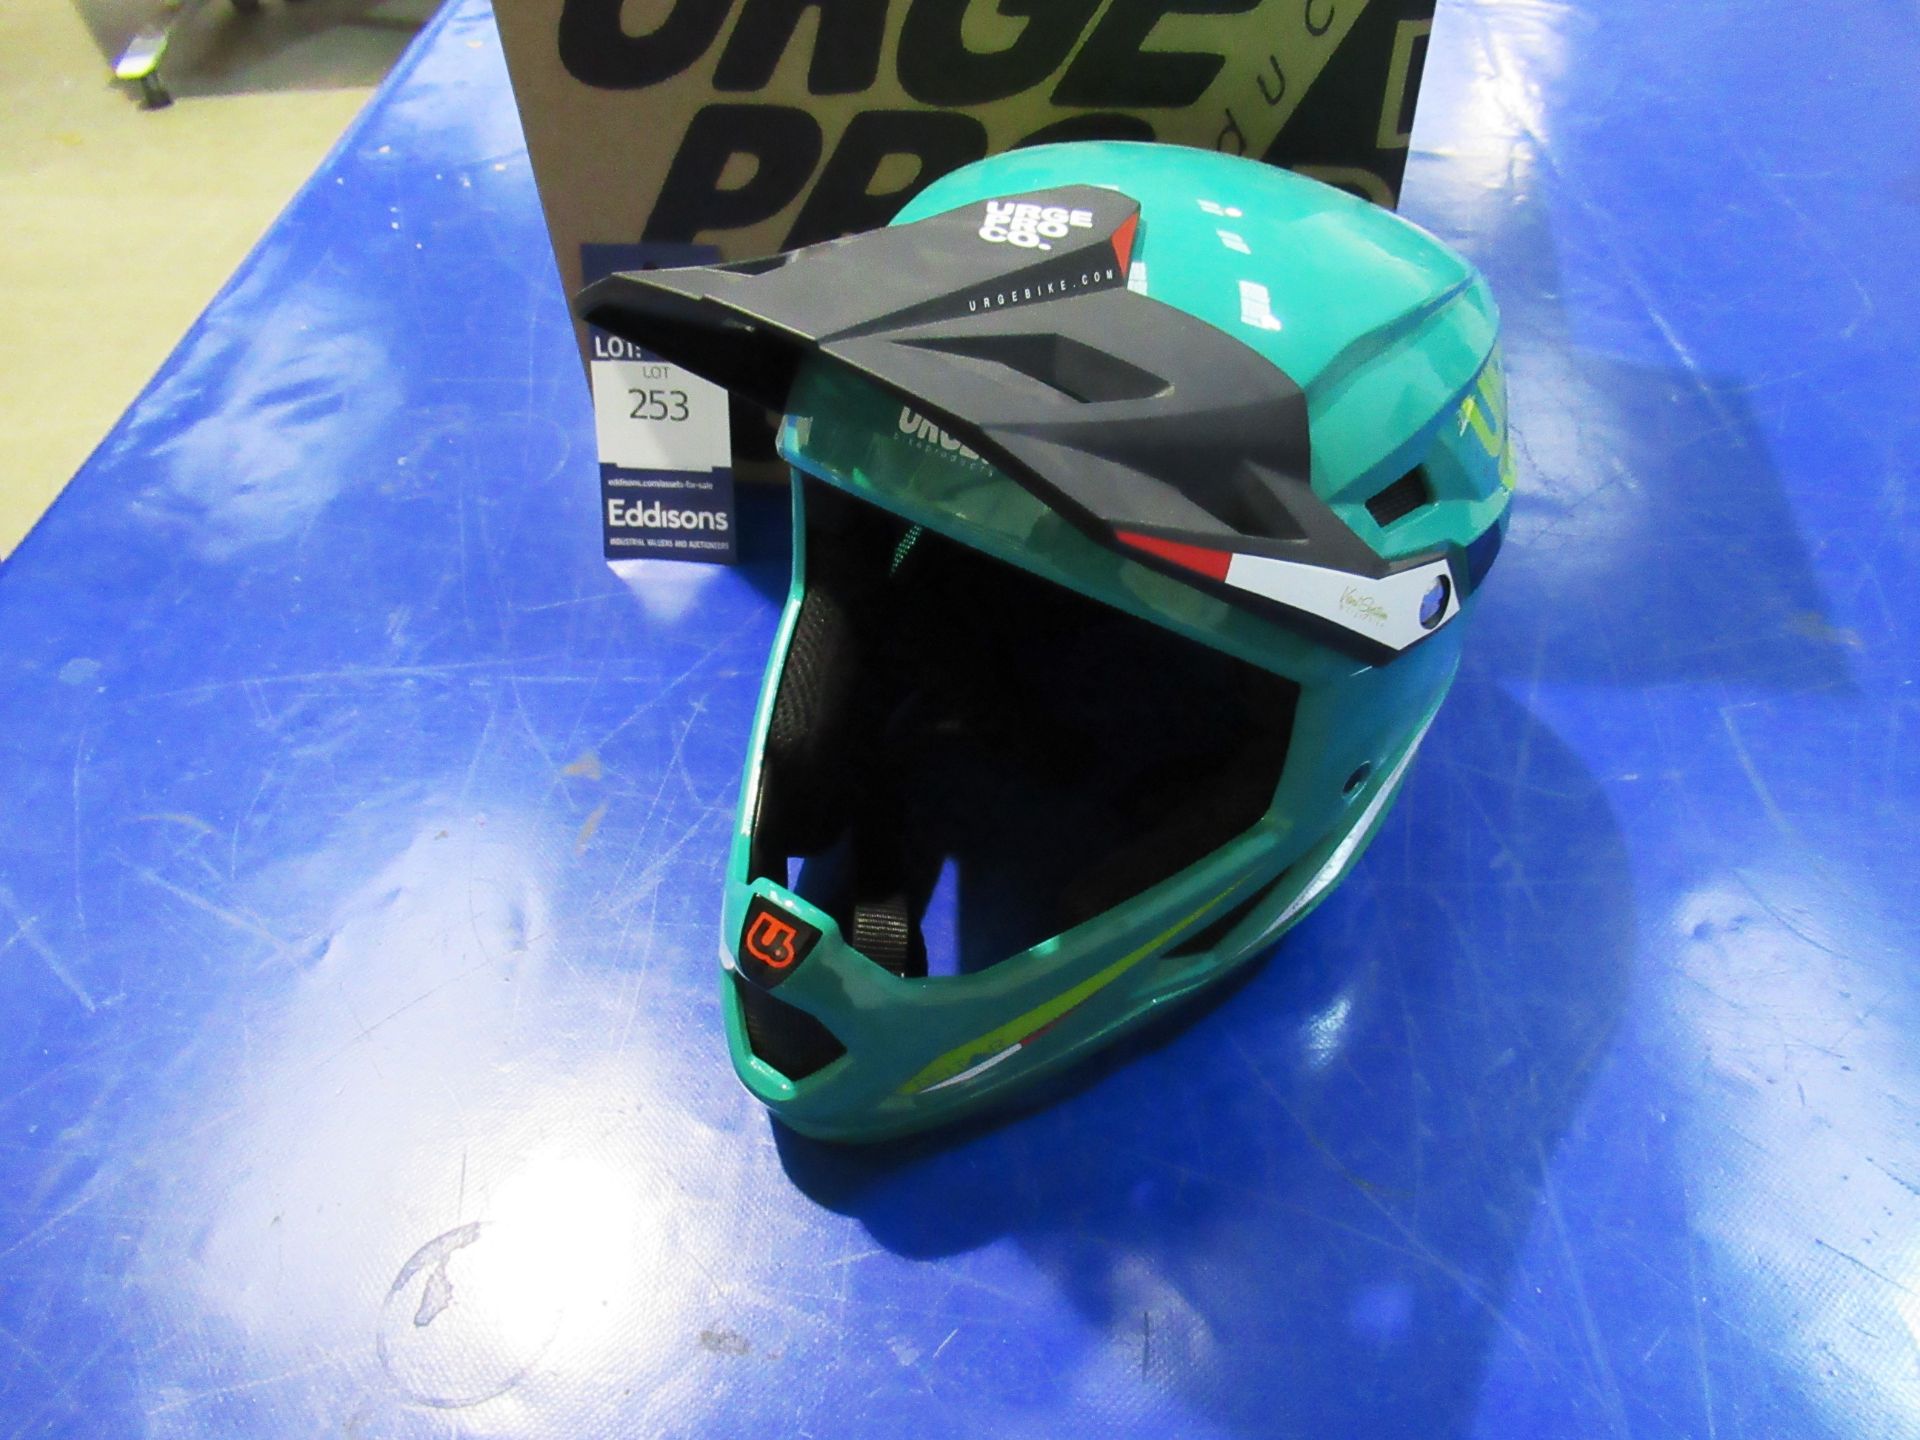 Urge Pro Deltar UBP21332L bicycle helmet, L (Green